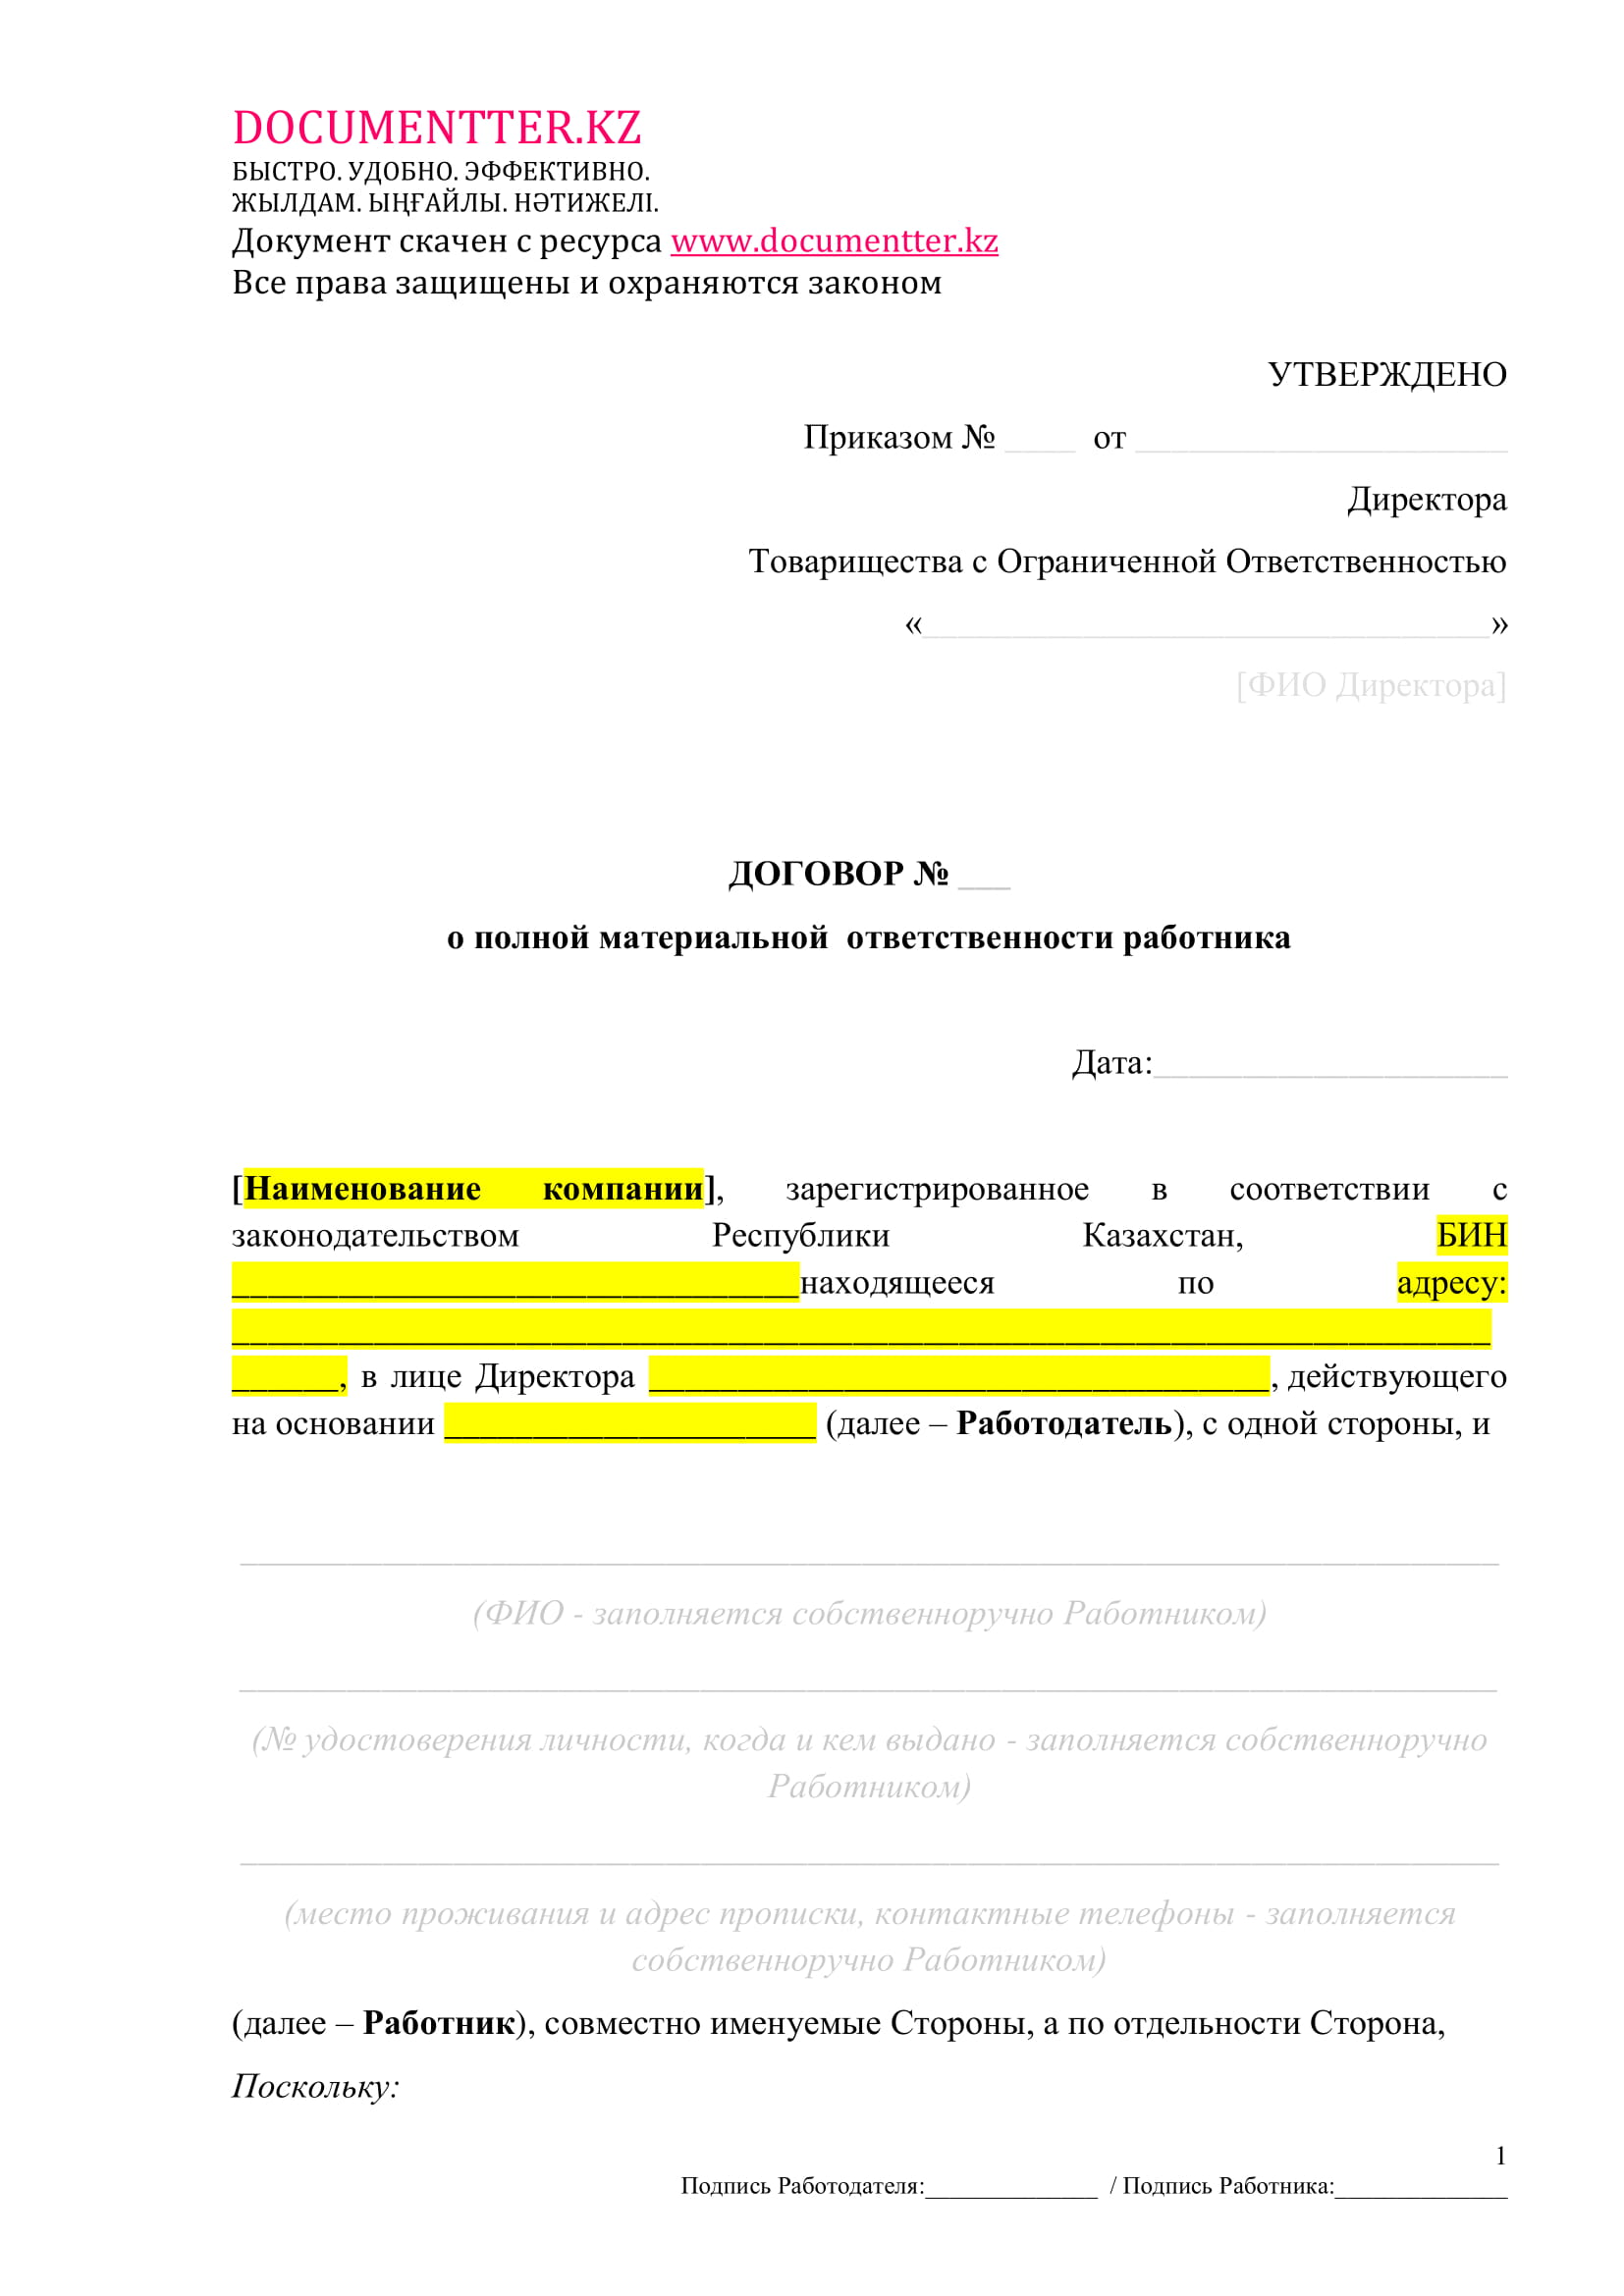 Договор о полной материальной ответственности | documentterkz.com в Казахстане